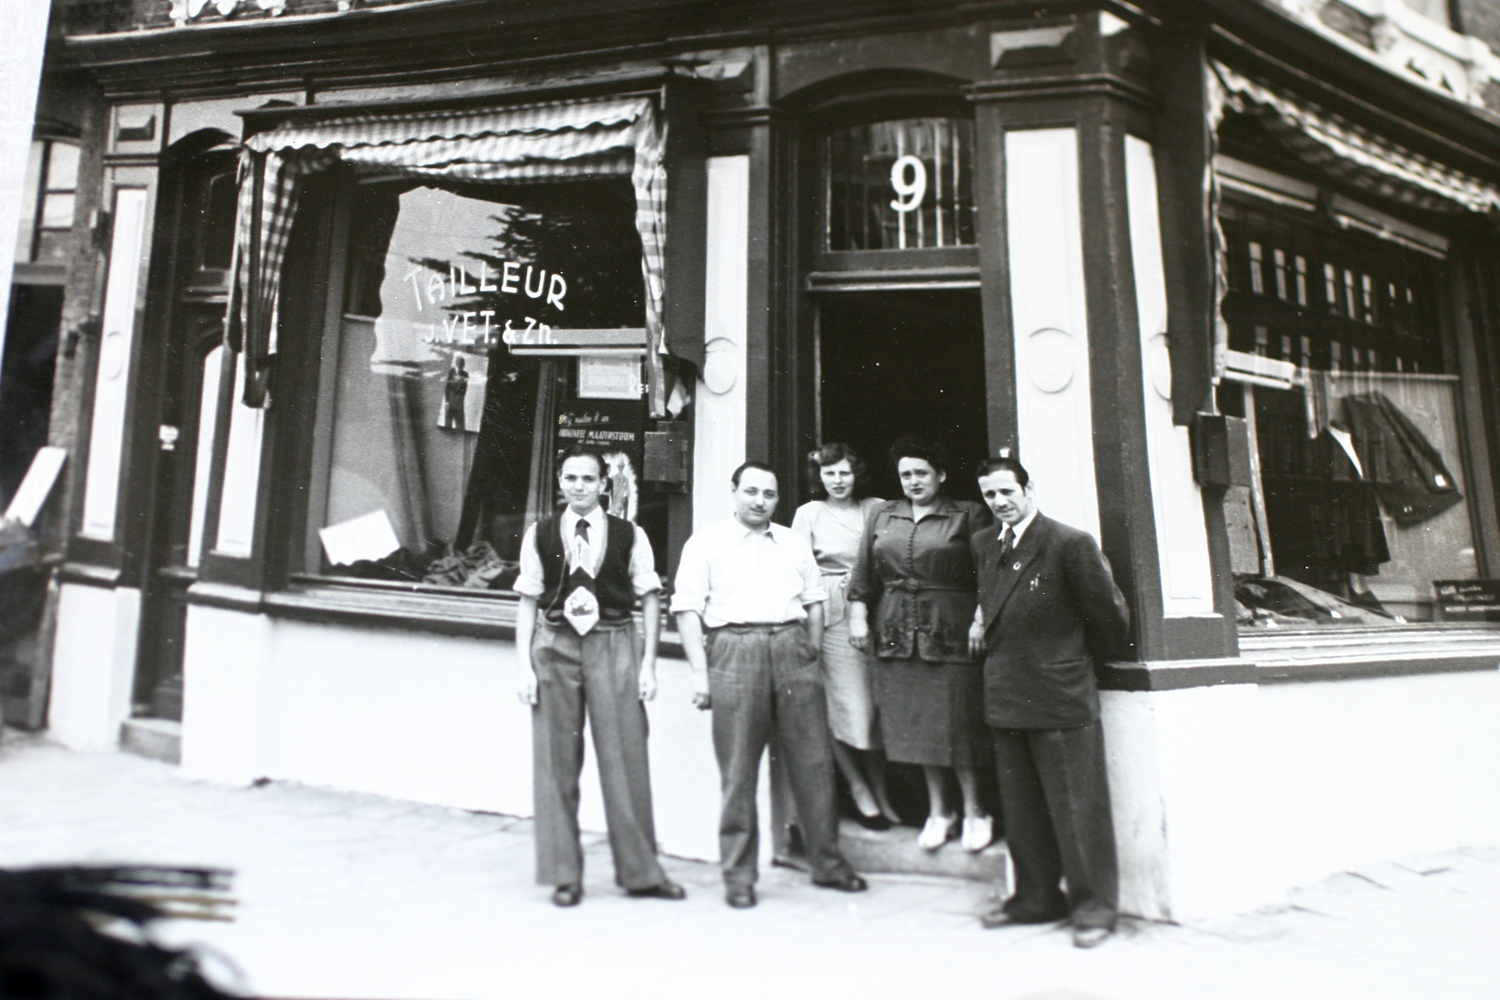 Vorming Canada verwijderen De winkel Tailleur Vet op de hoek P. Vlamingstraat en Dappermarkt, ervoor  staan van links naar rechts Joop Vet, Ben Vet en vrouw, en moeder en vader  Vet omtreeks 1953-1955. - Geheugen